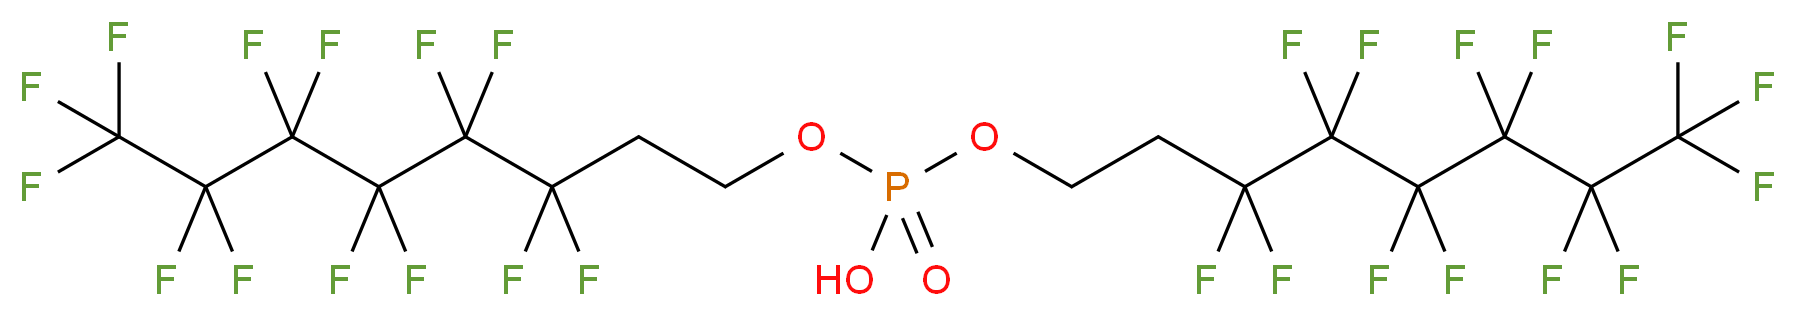 Bis[2-(perfluorohexyl)ethyl] Phosphate_Molecular_structure_CAS_57677-95-9)